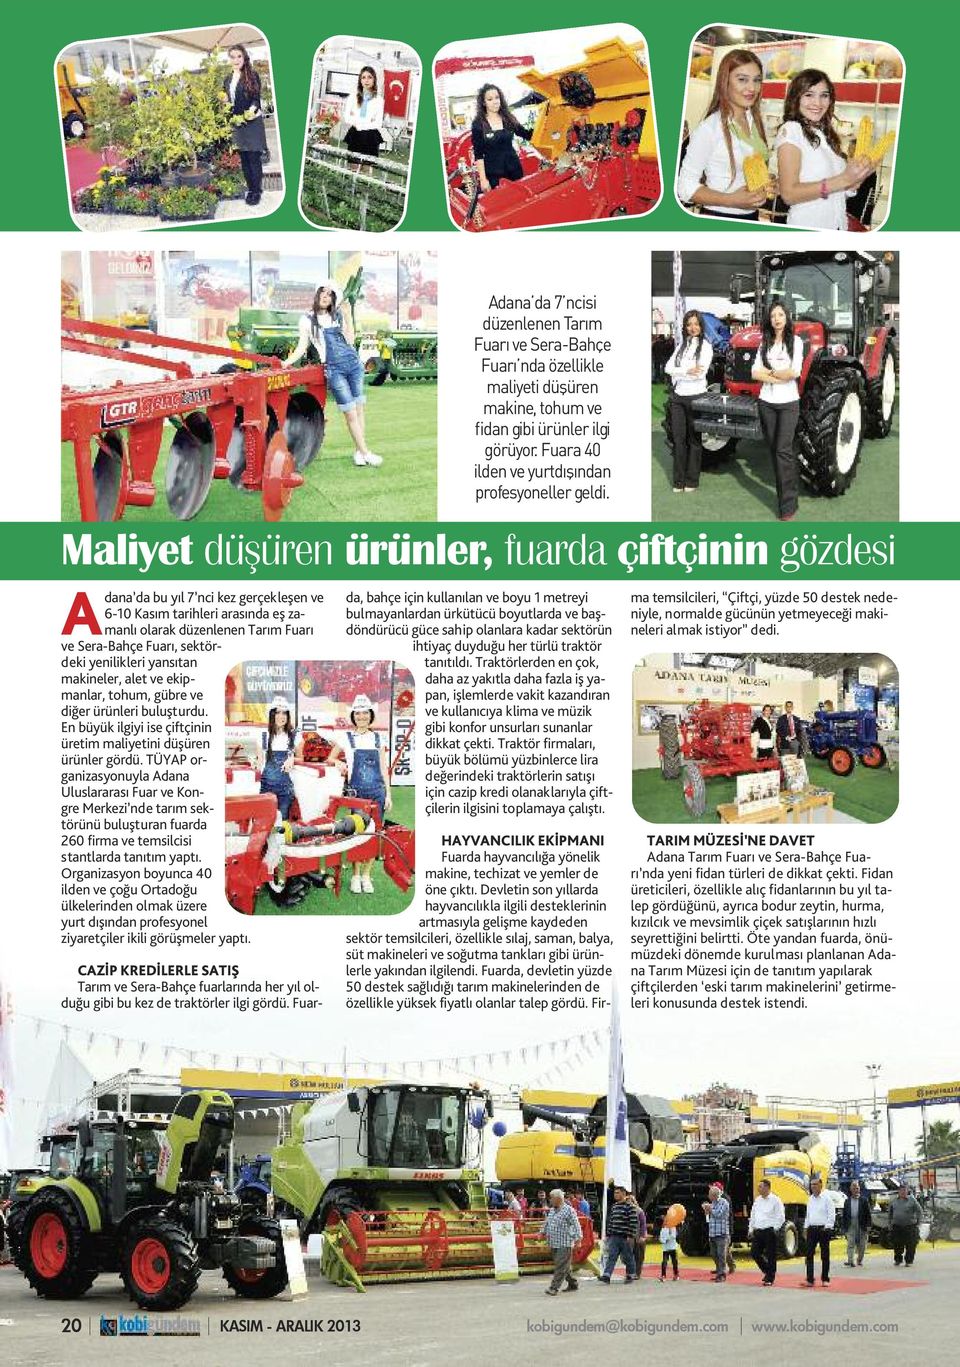 TÜYAP organizasyonuyla Adana Uluslararası Fuar ve Kongre Merkezi nde tarım sektörünü buluşturan fuarda 260 firma ve temsilcisi stantlarda tanıtım yaptı.